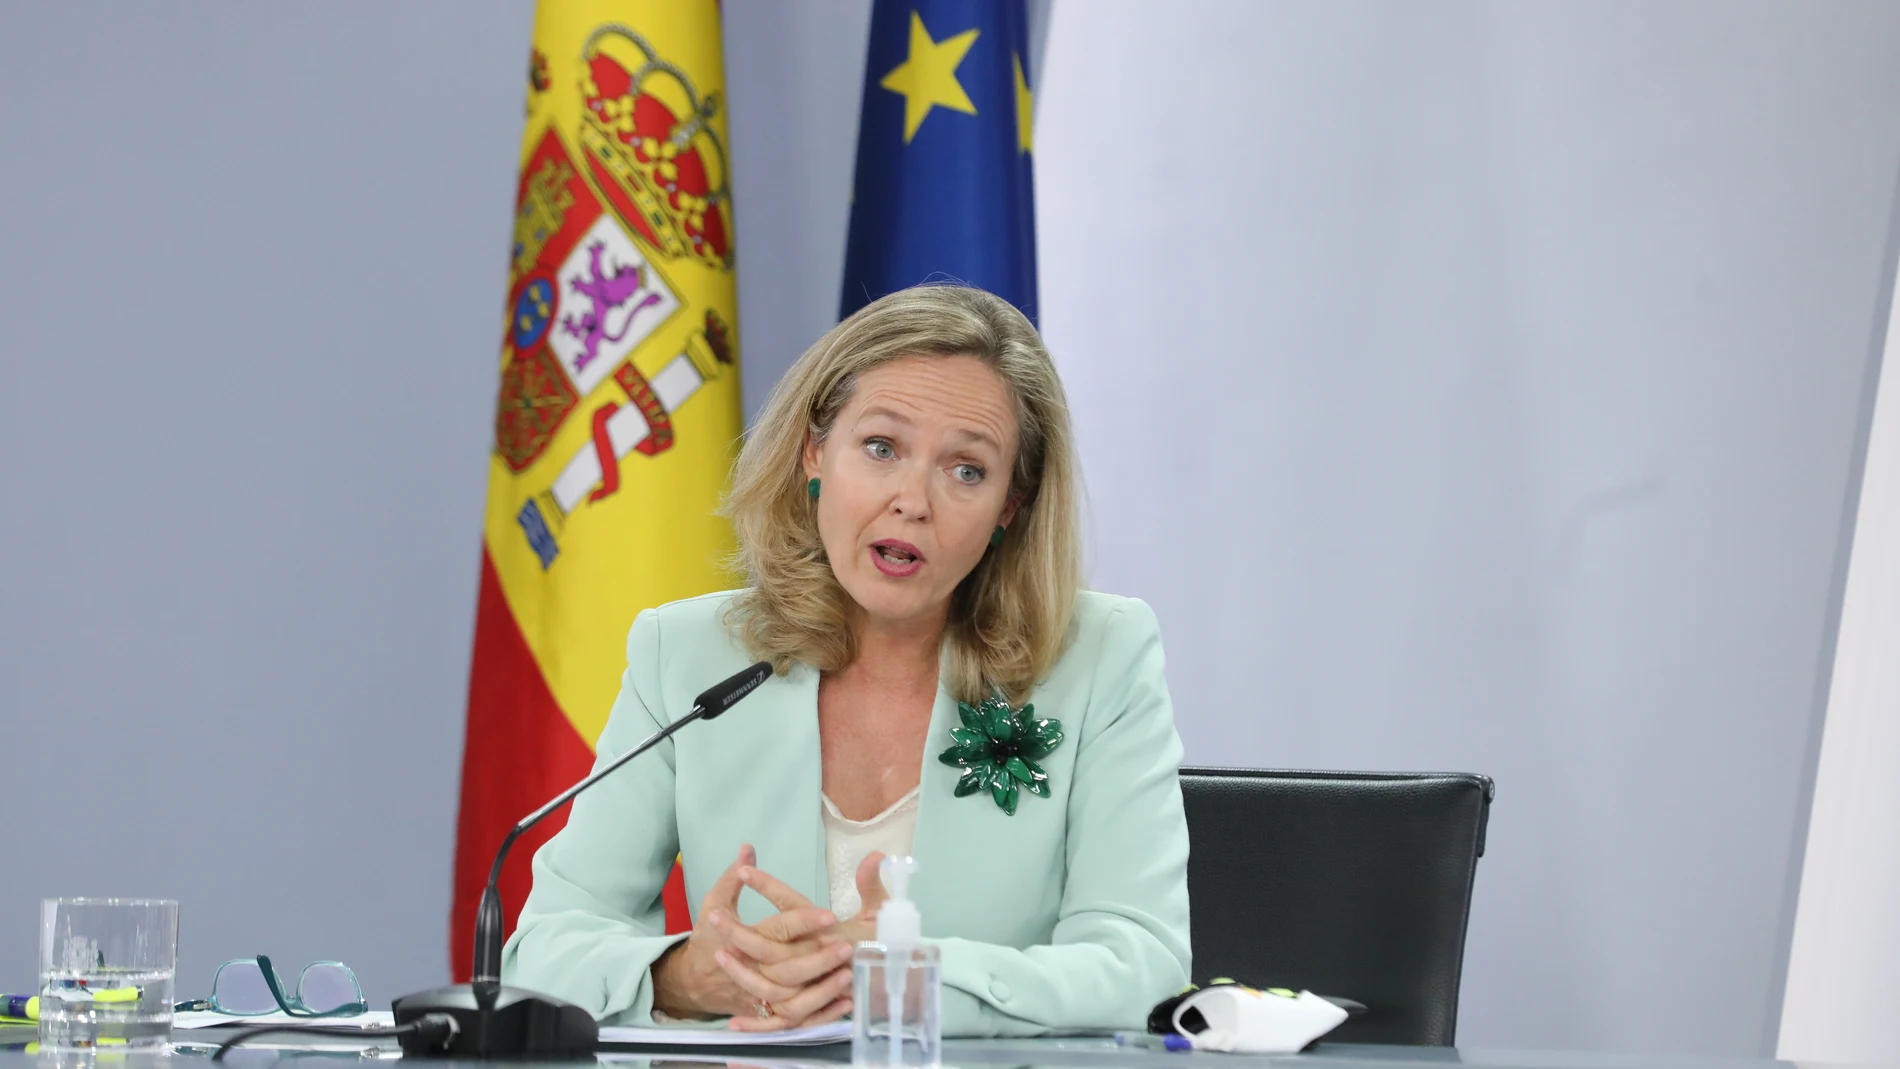 La vicepresidenta primera y ministra de Asuntos Económicos y Transformación Digital, Nadia Calviño, interviene en una rueda de prensa posterior a la reunión del Consejo de Ministros